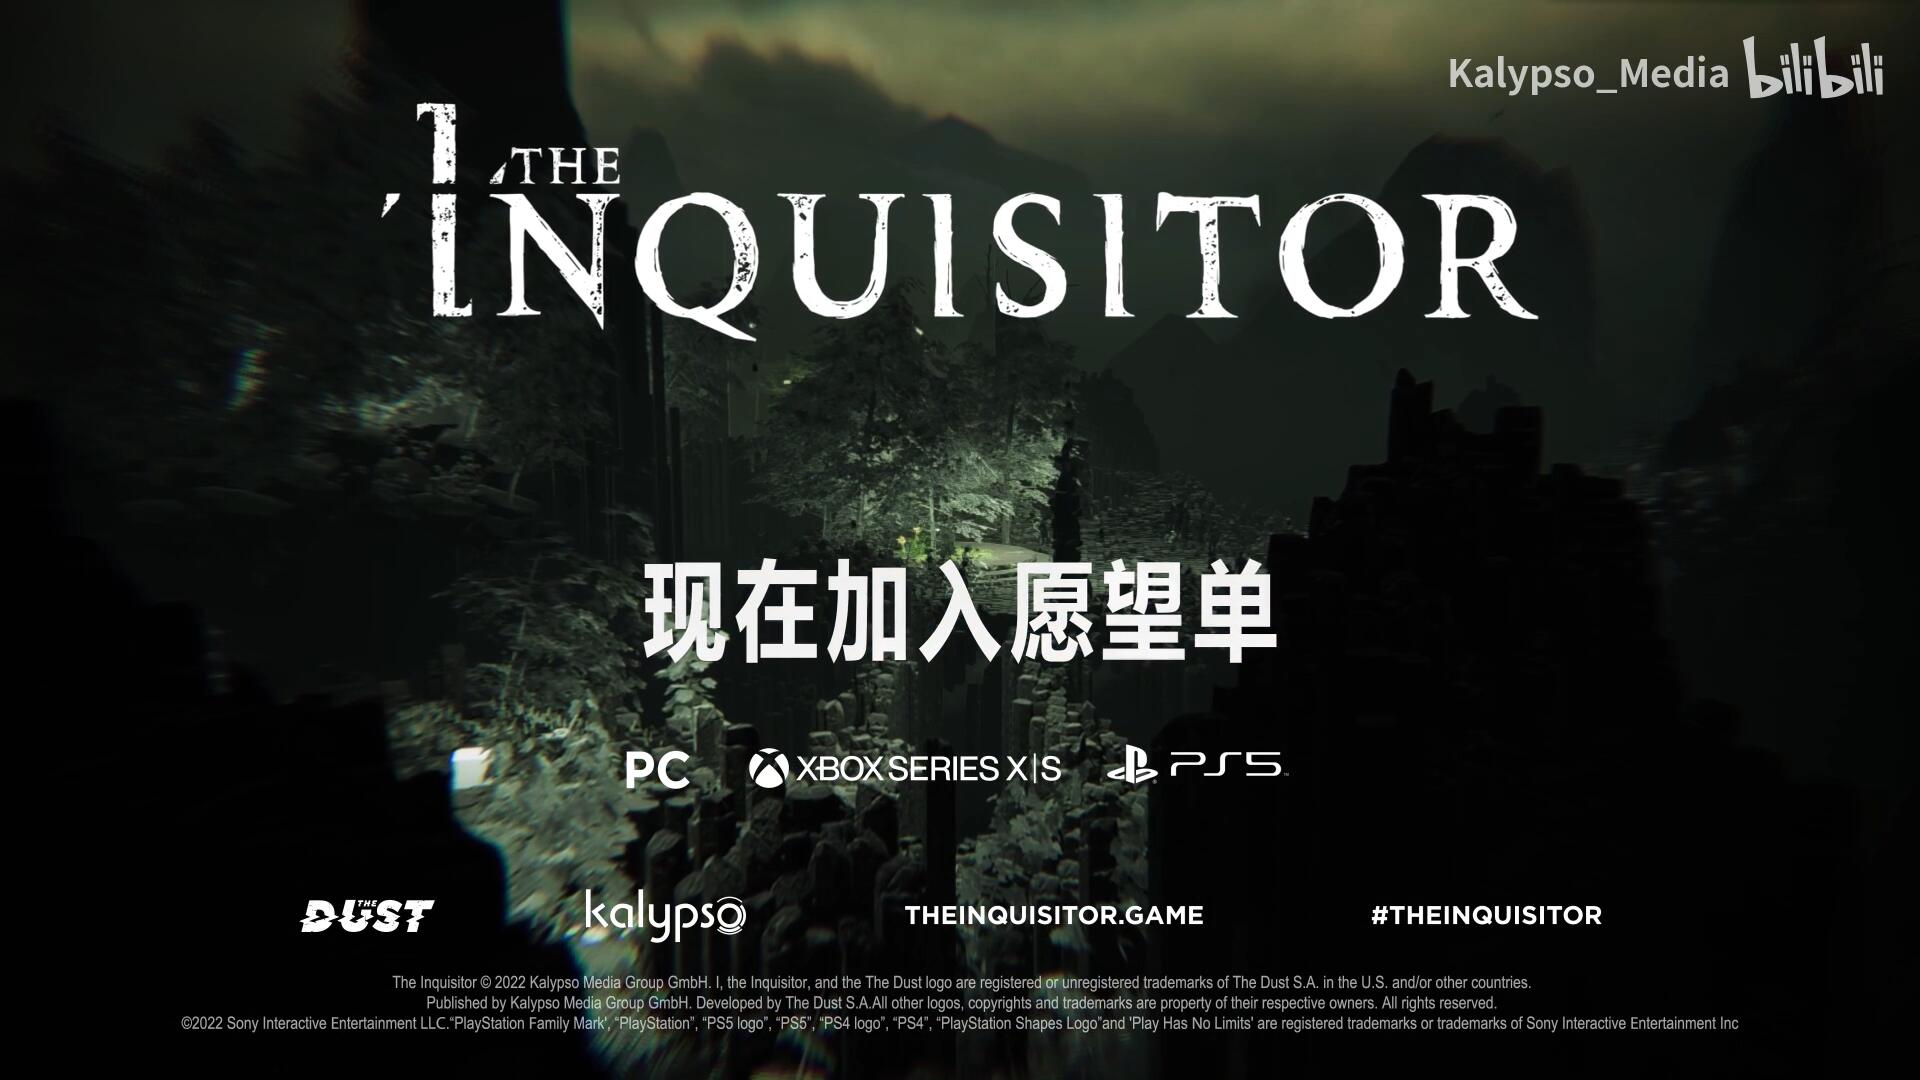 黑暗奇幻遊戲《審判者》新預告片發布 首發將支持中文